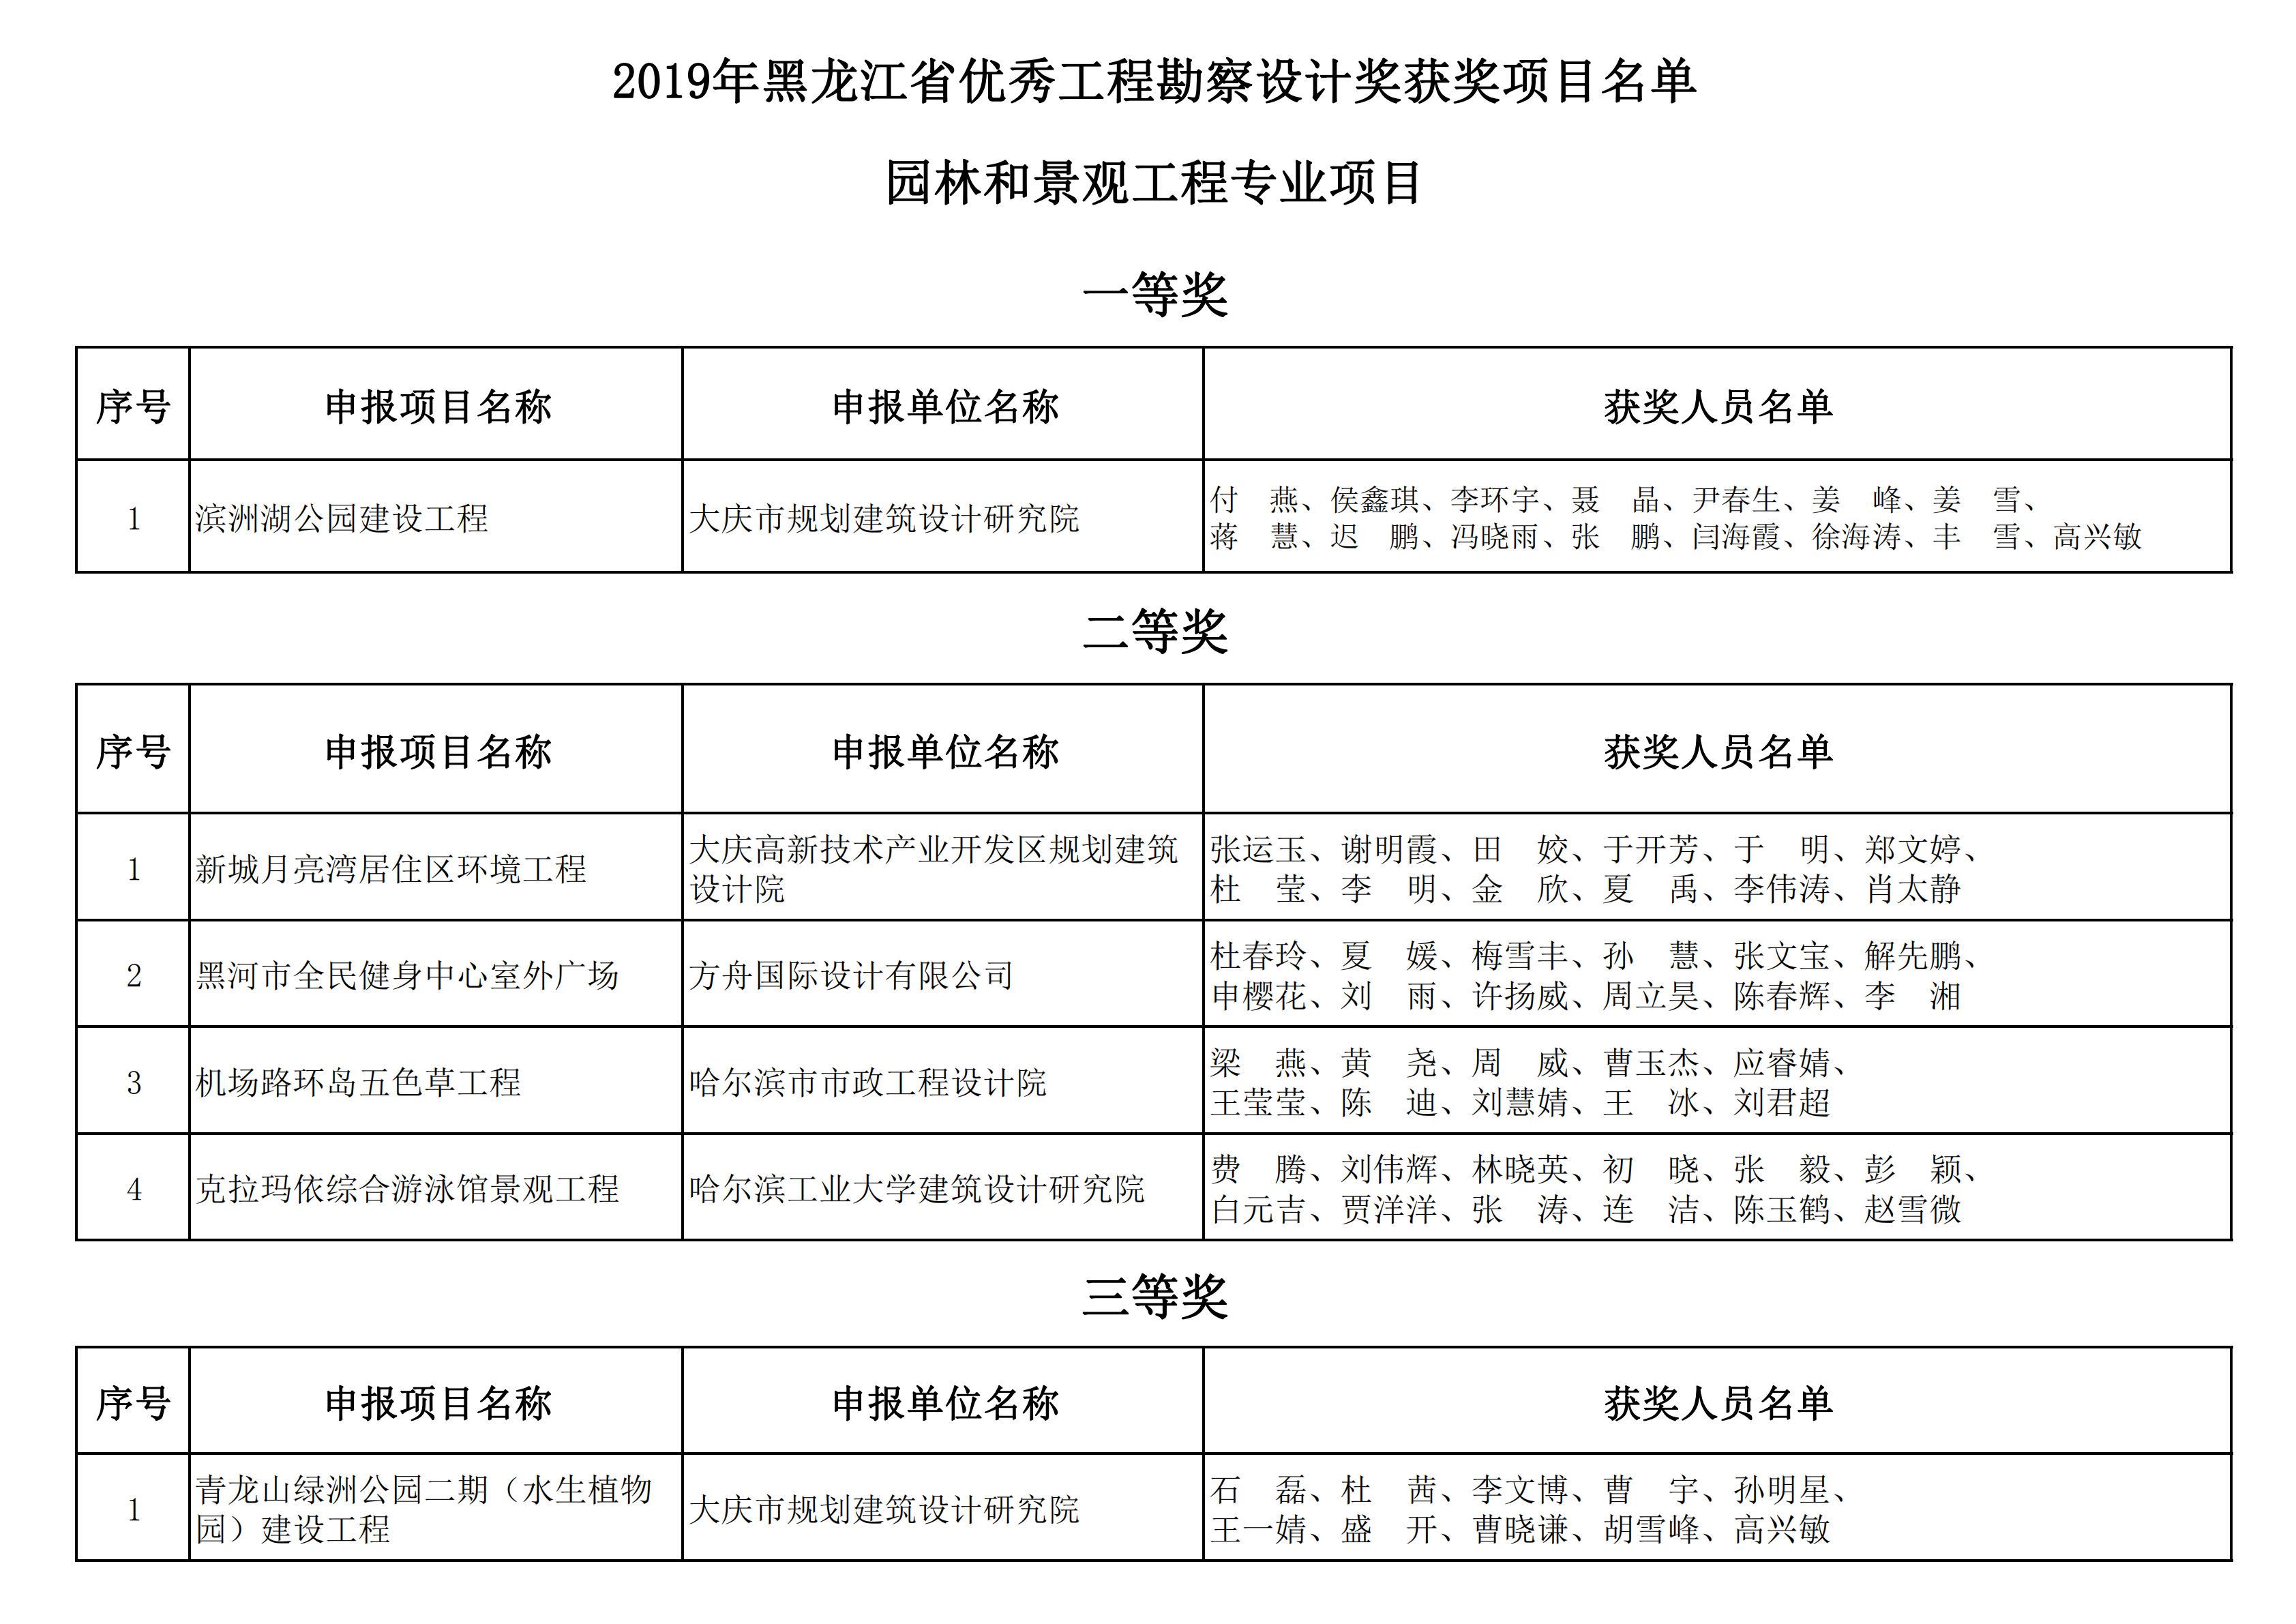 2019年黑龙江省优秀工程勘察设计奖获奖项目名单_17.png